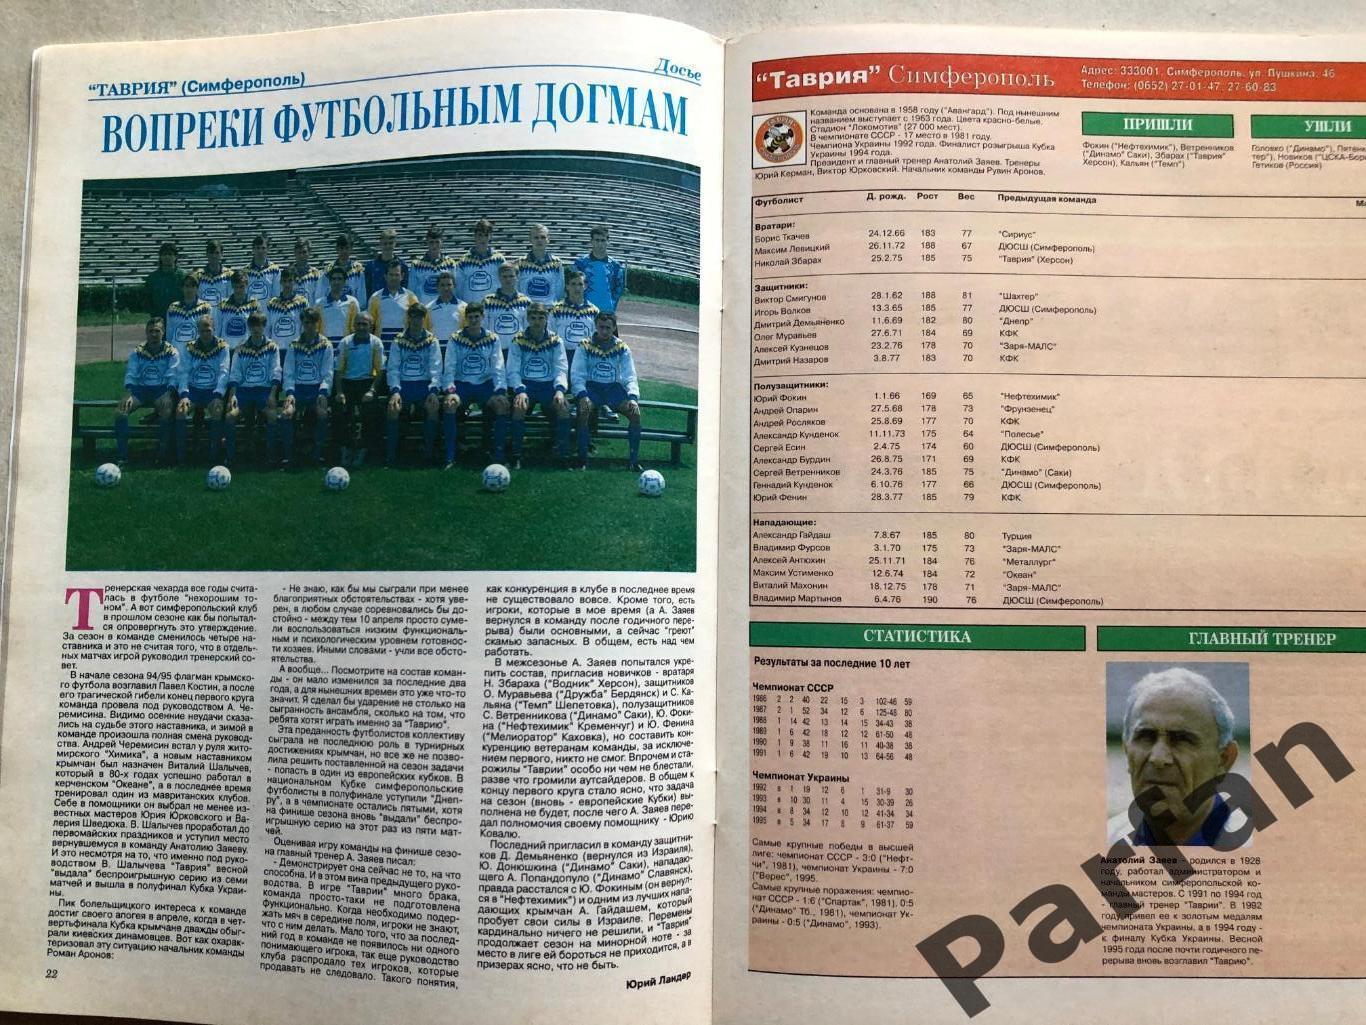 Мир Футбола Україна Вища ліга Чемпіонат 1995/96 Спецвипуск 6